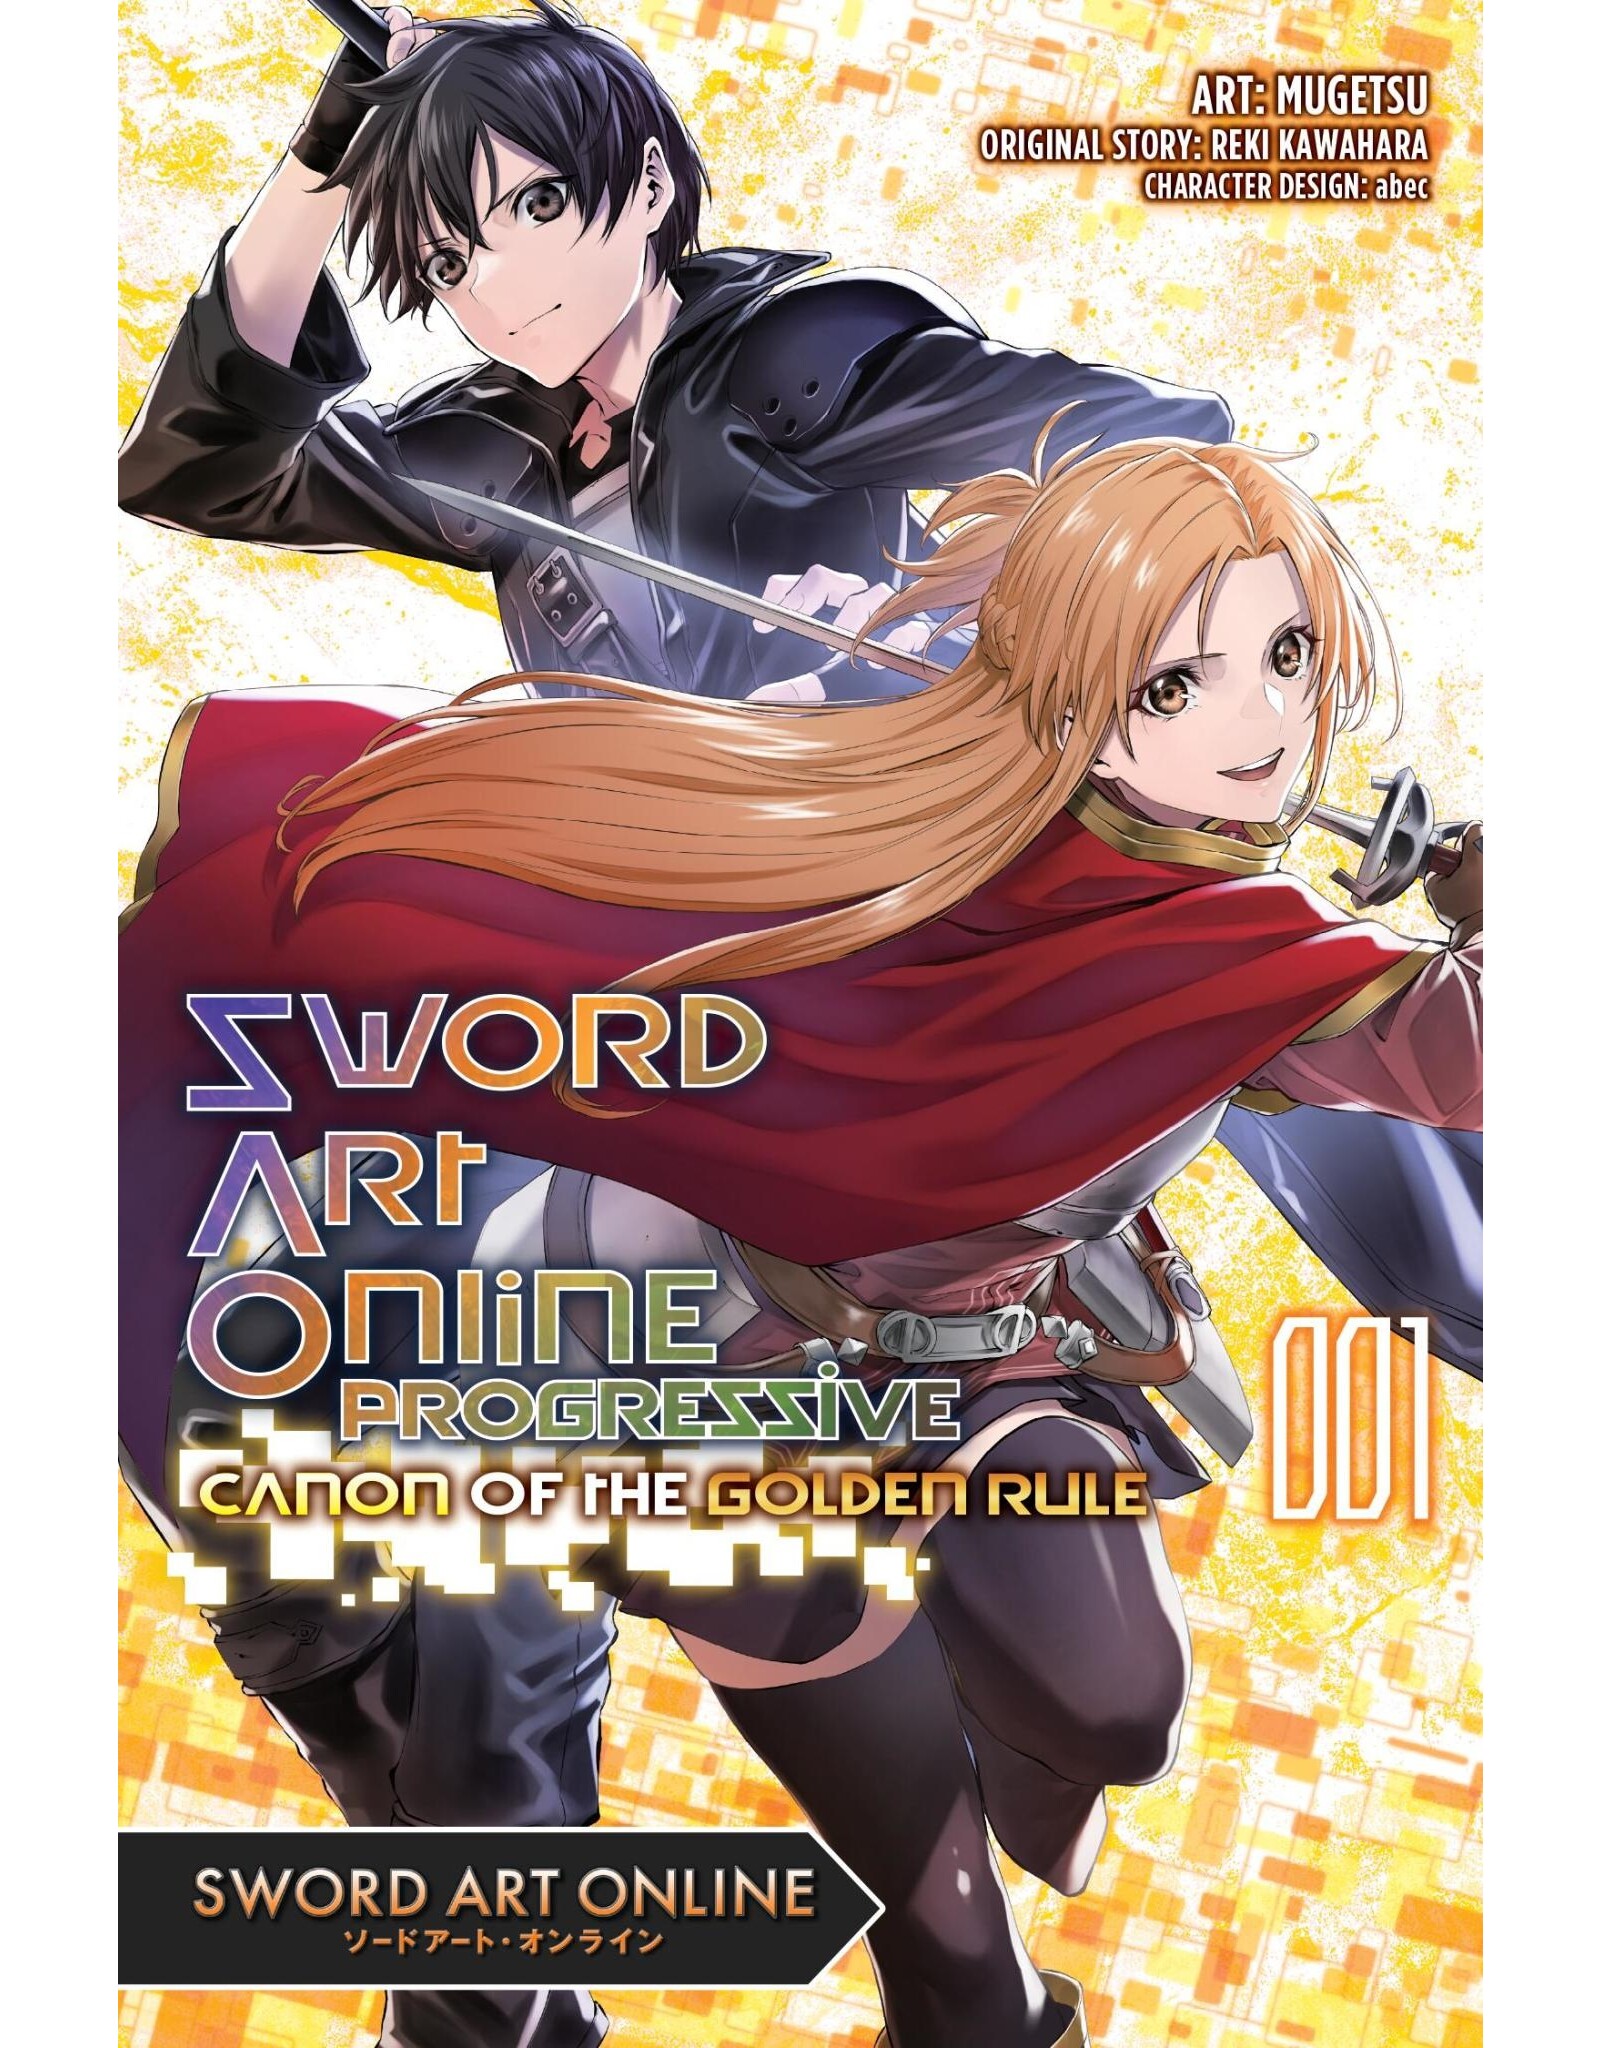 Sword Art Online Progressive Canon of the Golden Rule 001 (Engelstalig) - Manga